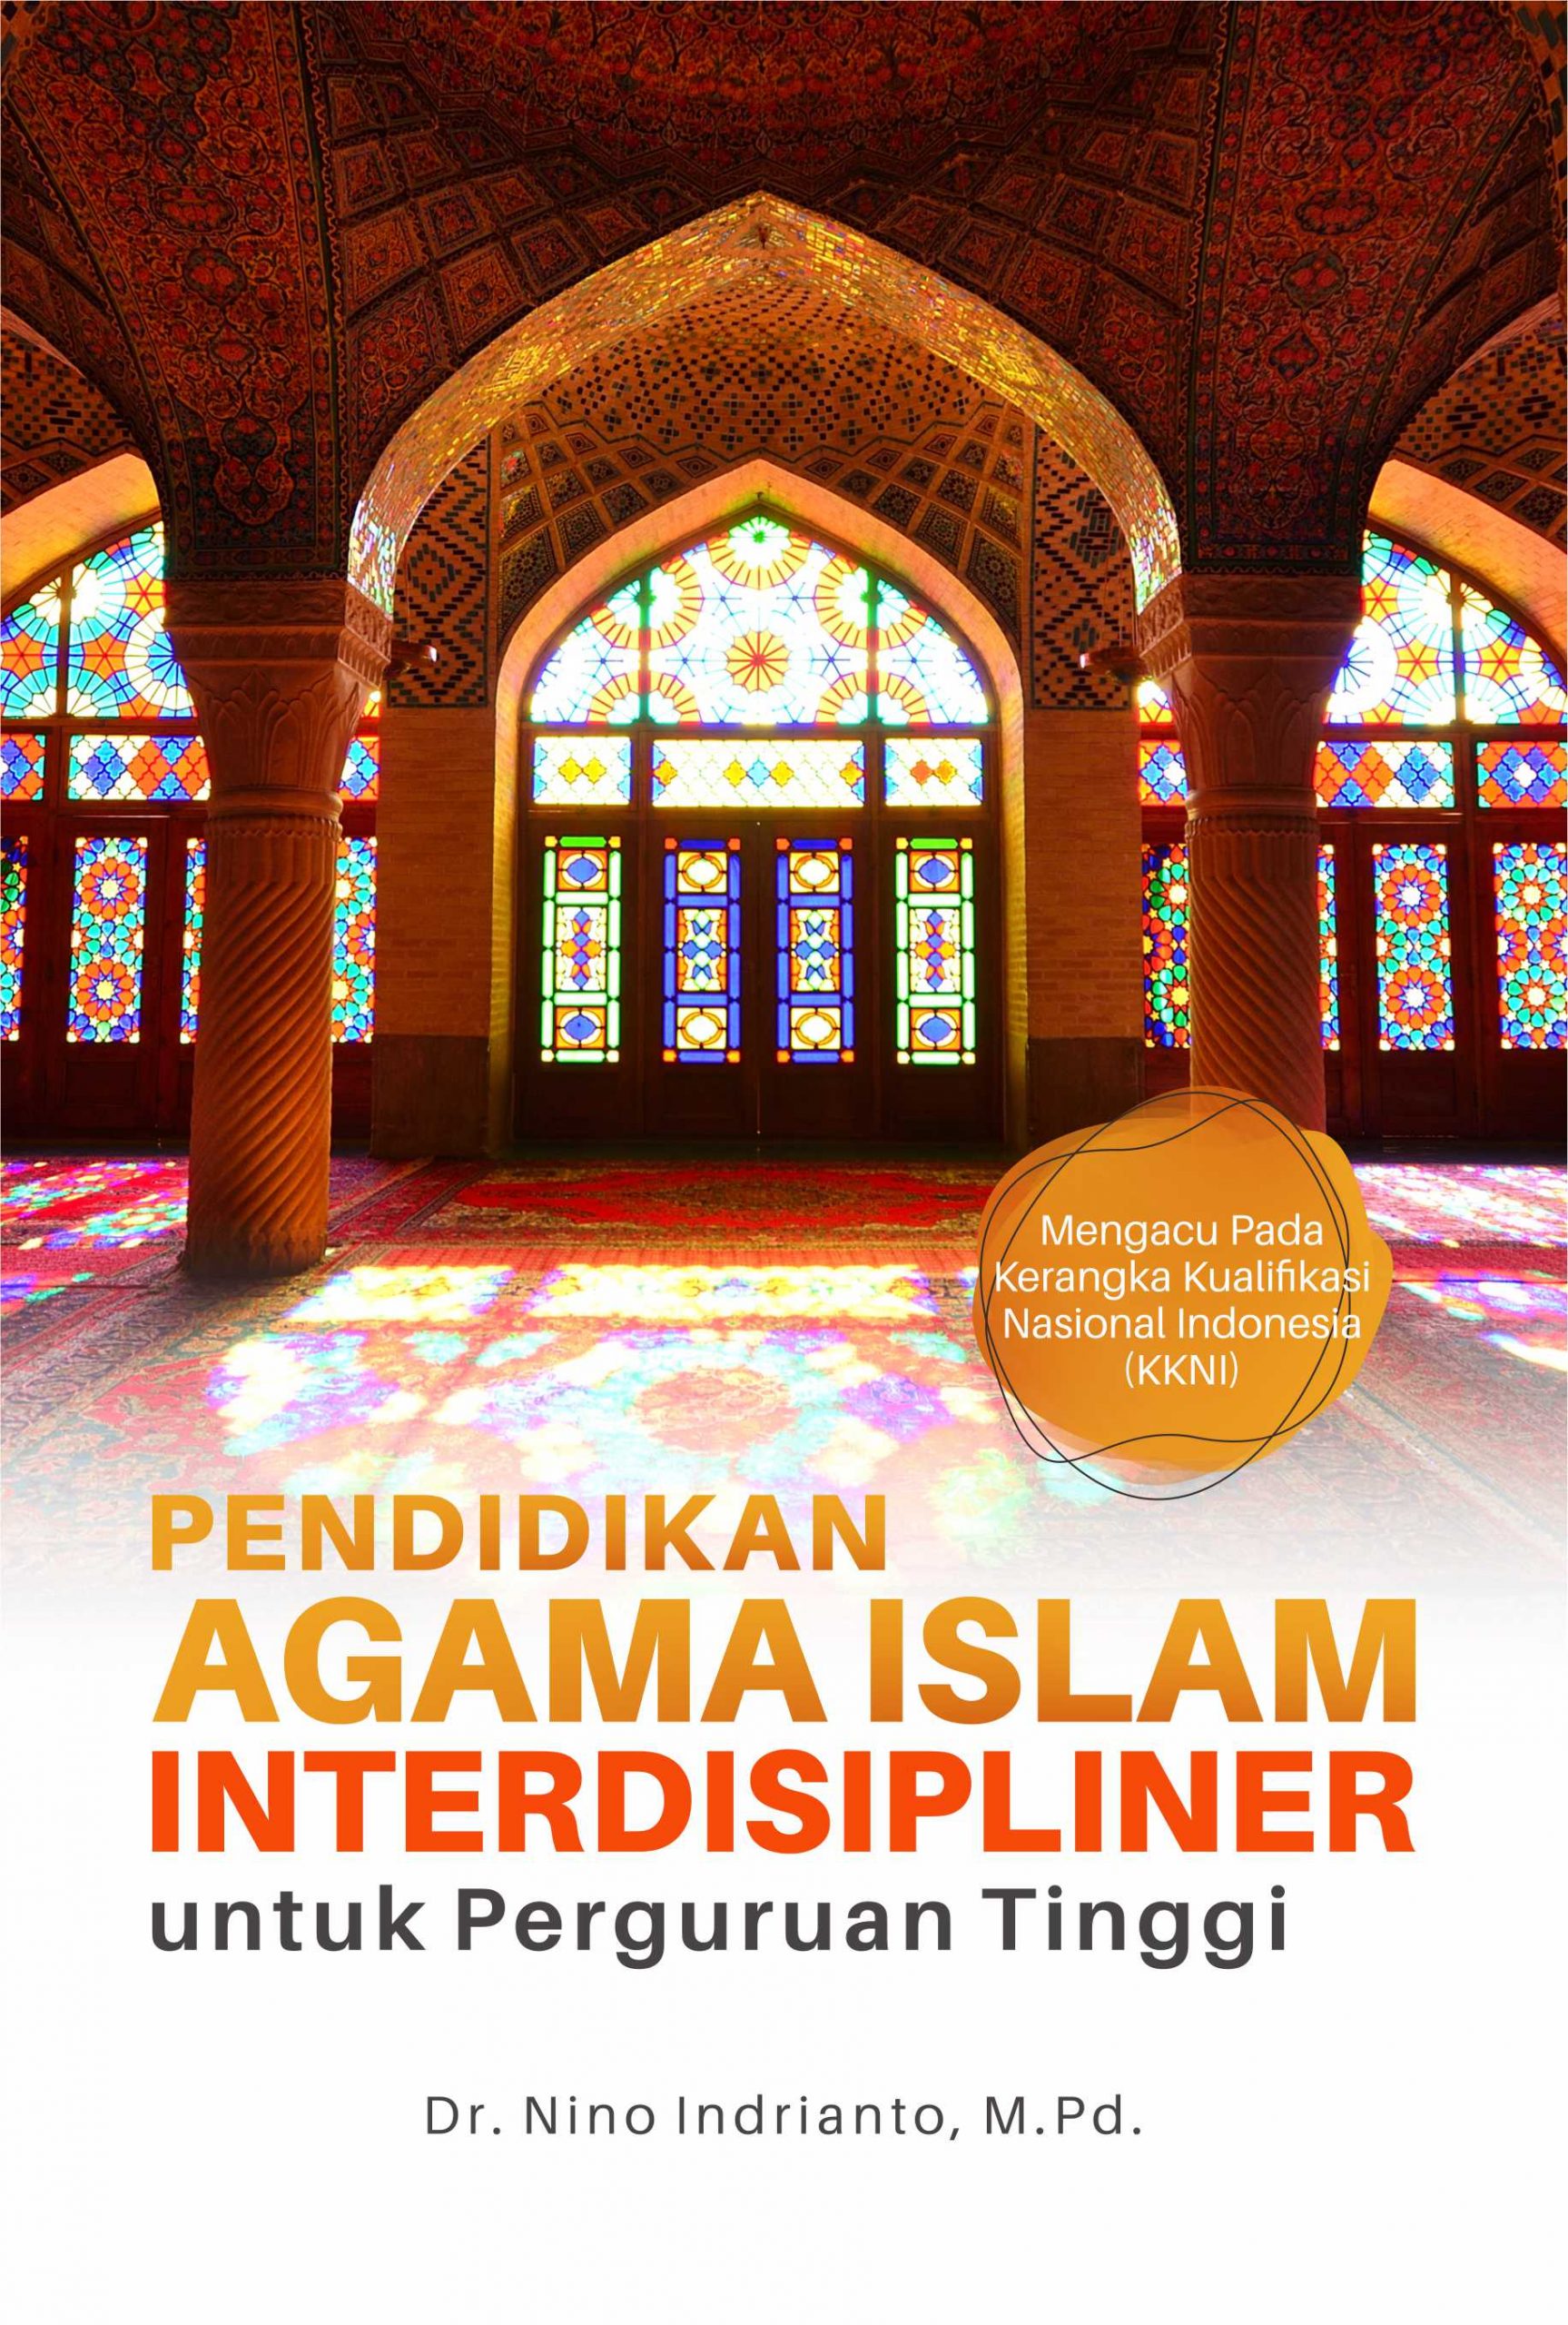 Buku Pendidikan agama islam